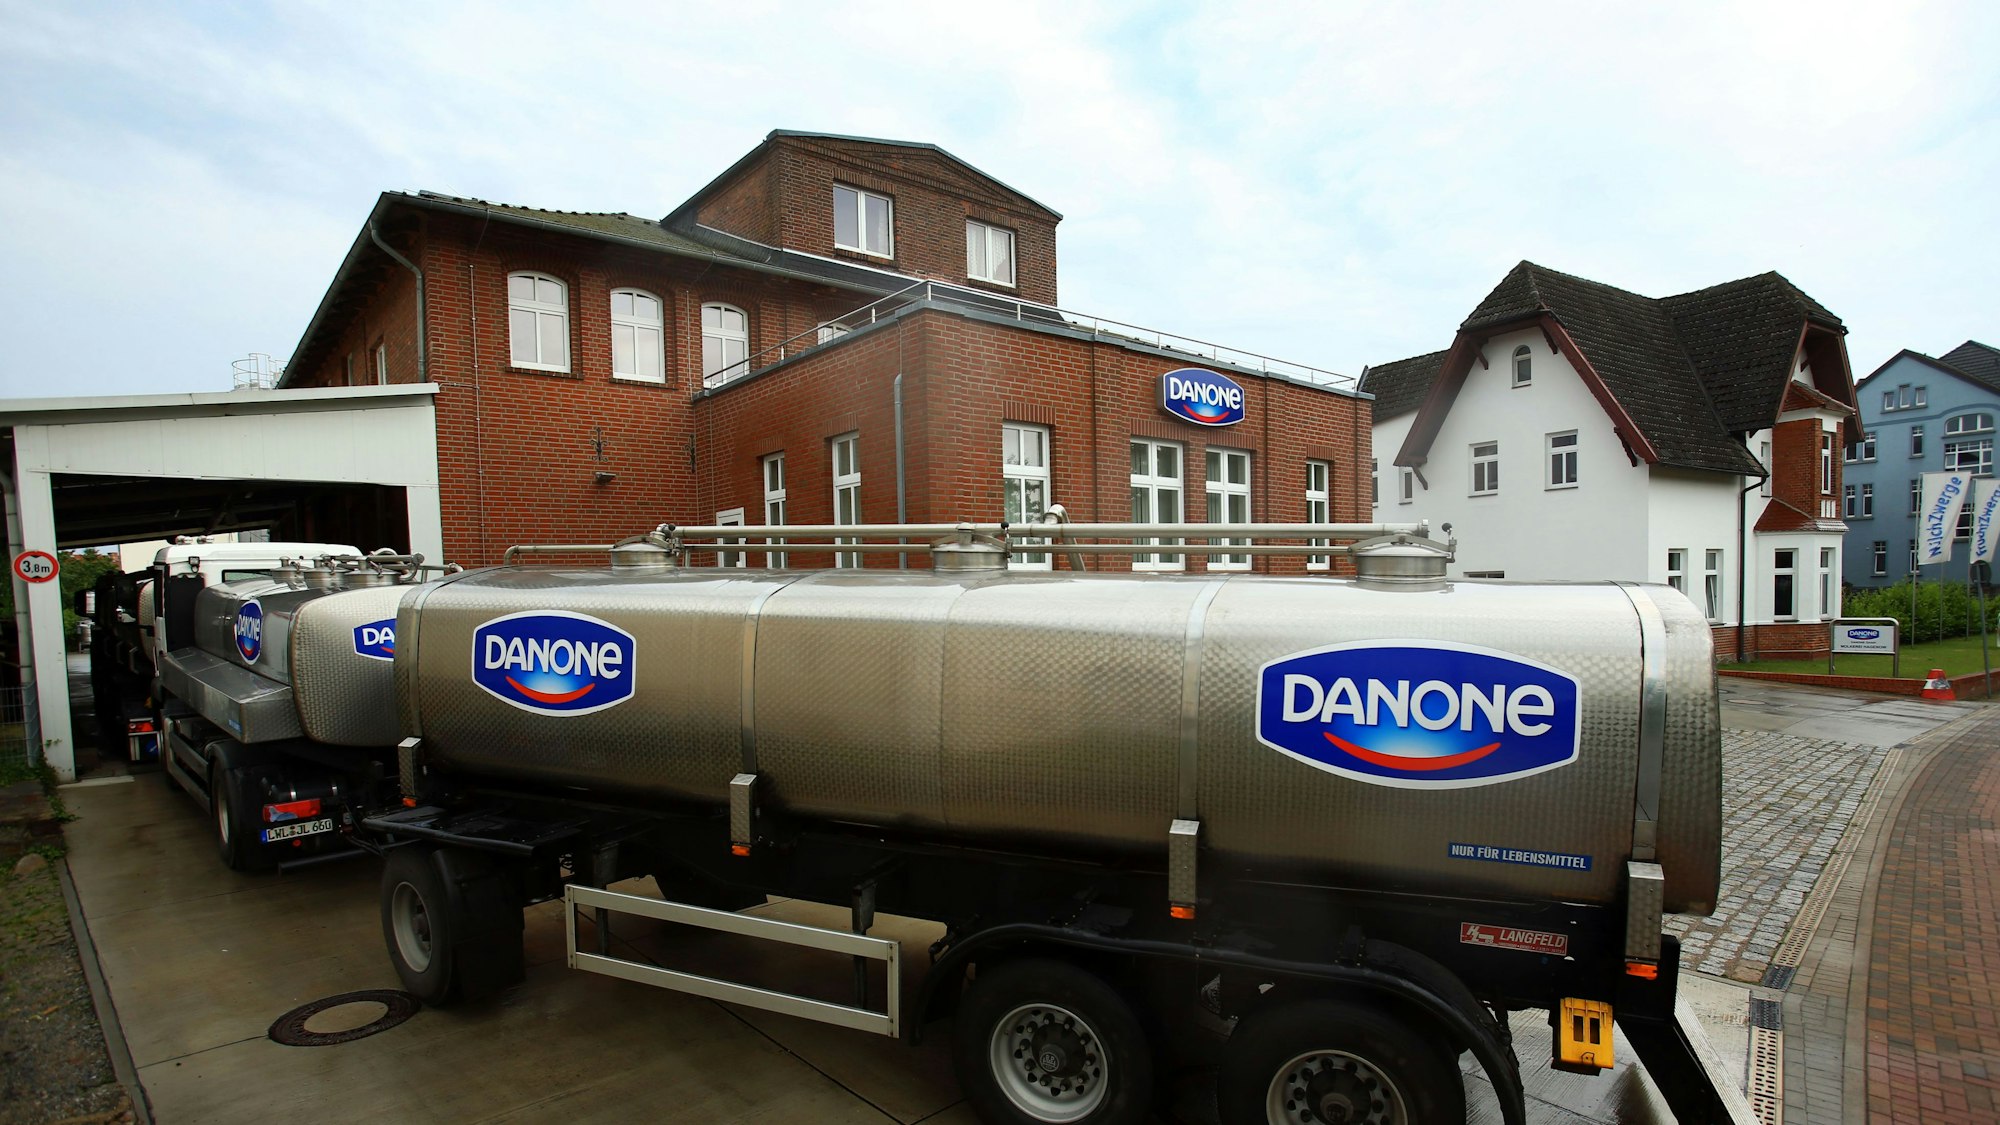 Danone droht in Spanien ein Produktionsstillstand. Grund sind Proteste von Lastwagenfahrern. Ein Milchlaster steht auf unserem Archivbild am 11.06.2014 vor einer Molkerei des französischen Konzerns Danone in Hagenow (Mecklenburg-Vorpommern).